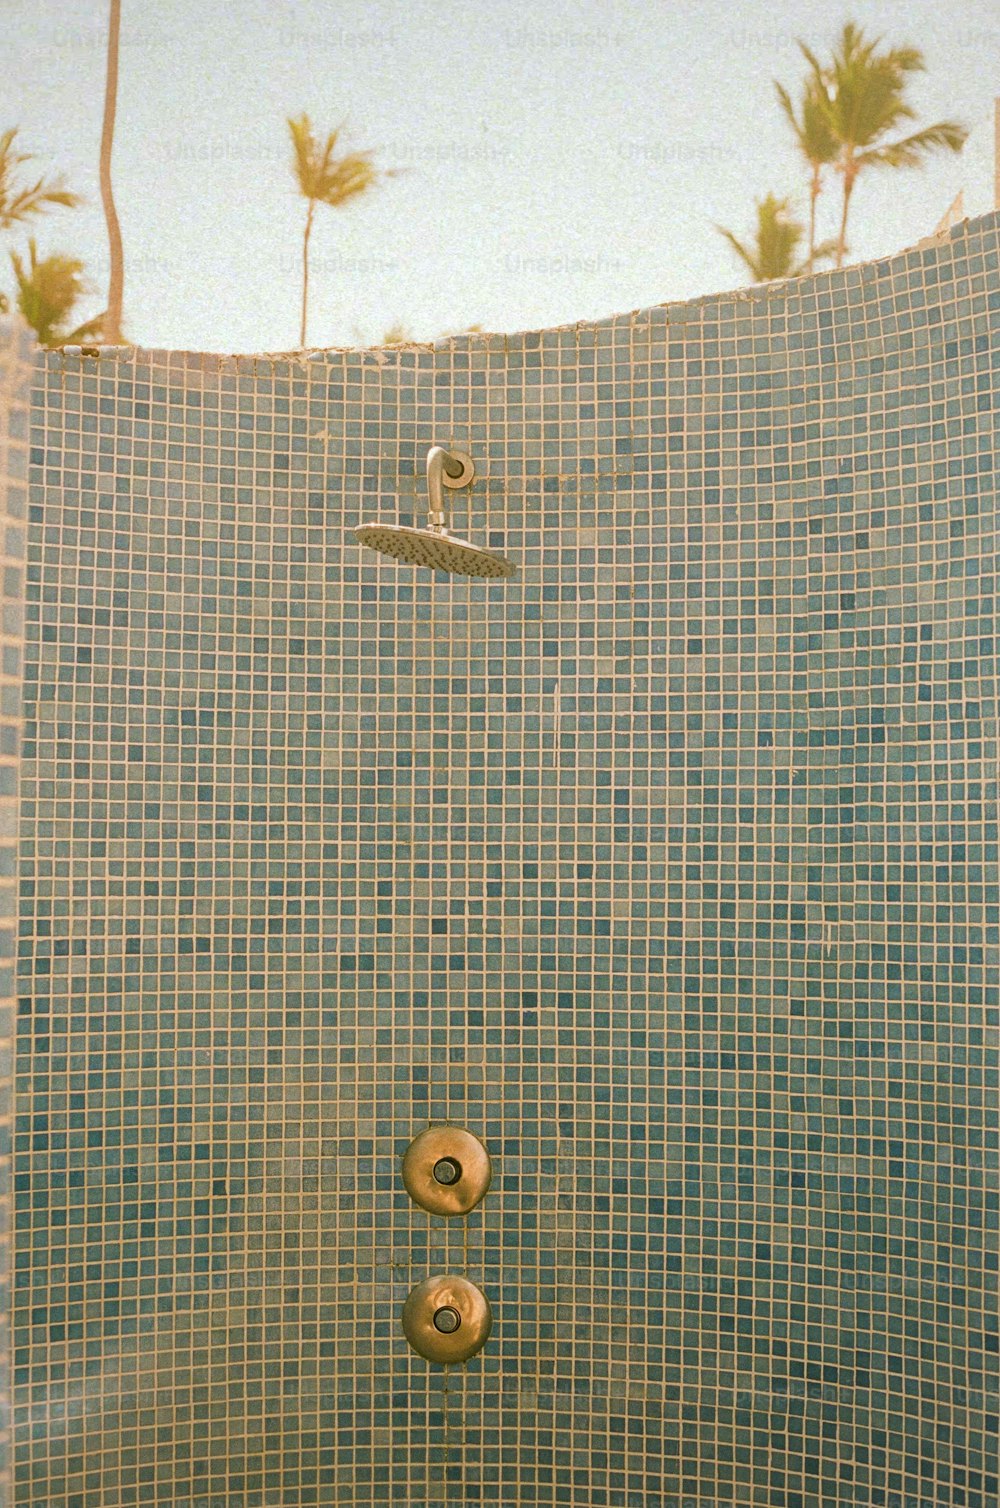 una ducha de azulejos con cabezal de ducha y grifo de ducha de mano